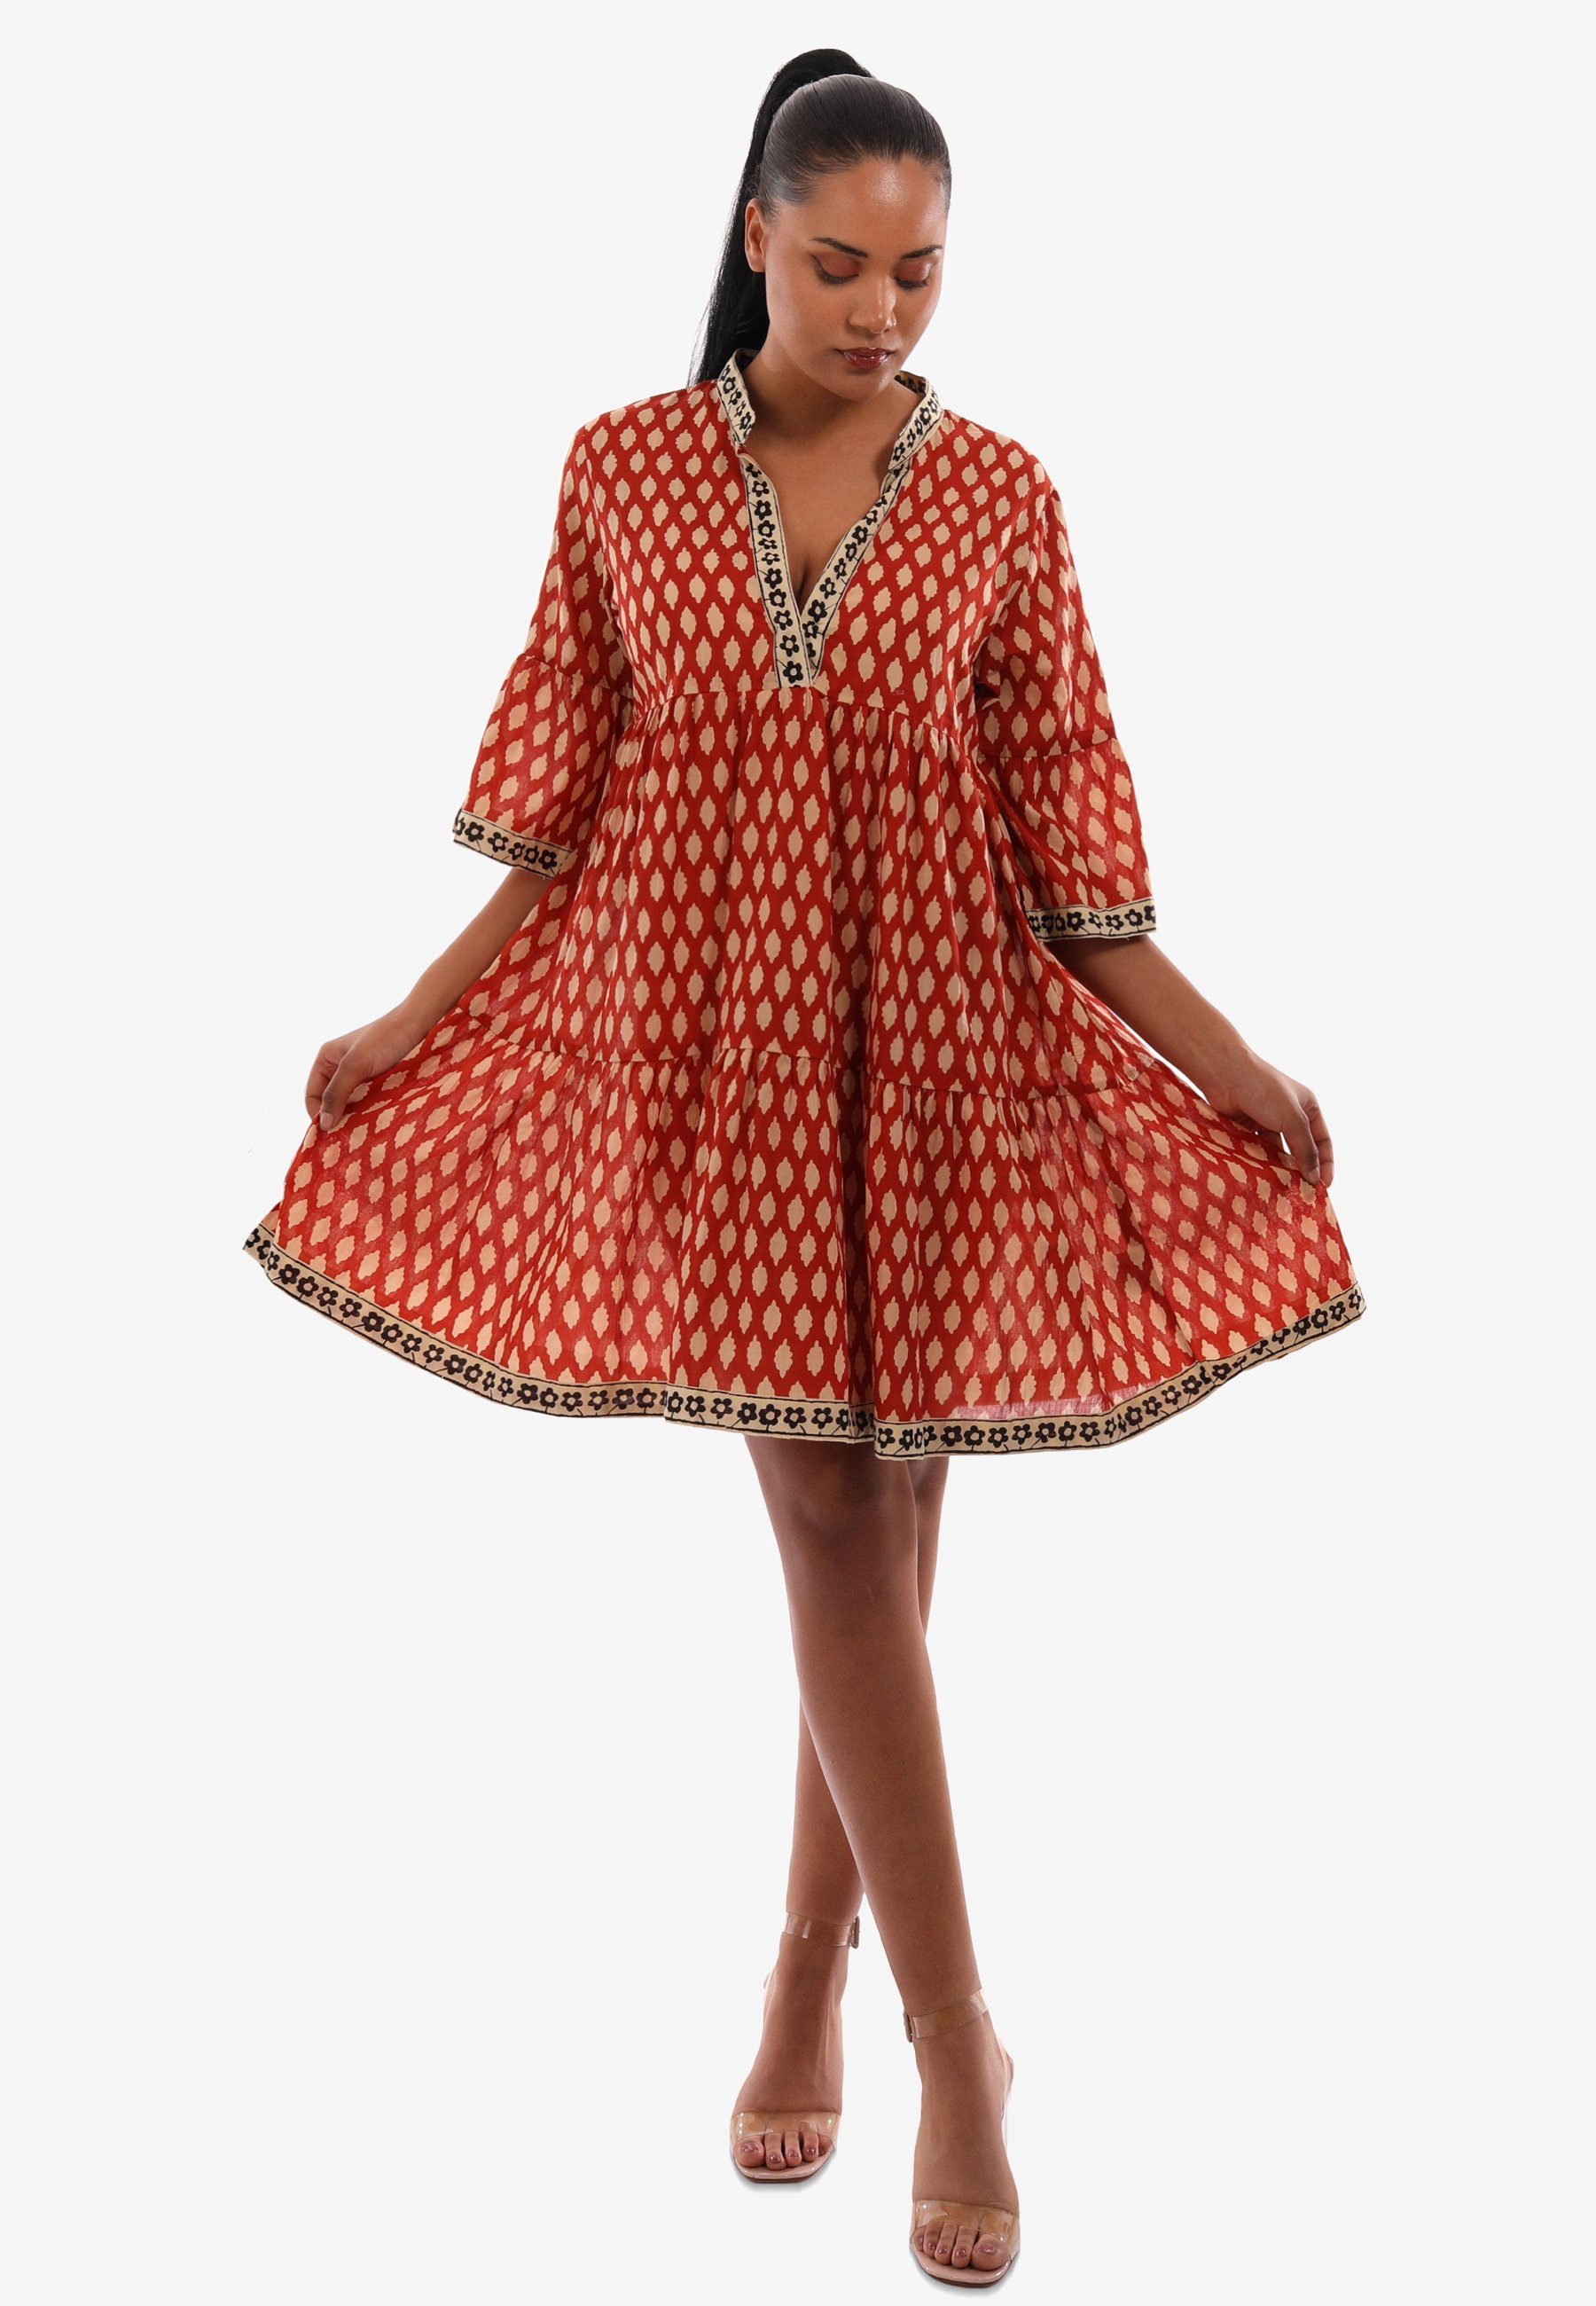 & YC Oversized - Kleid Tunika Bequem mit Style und Alloverdruck Lässig Boho Fashion Tunikakleid